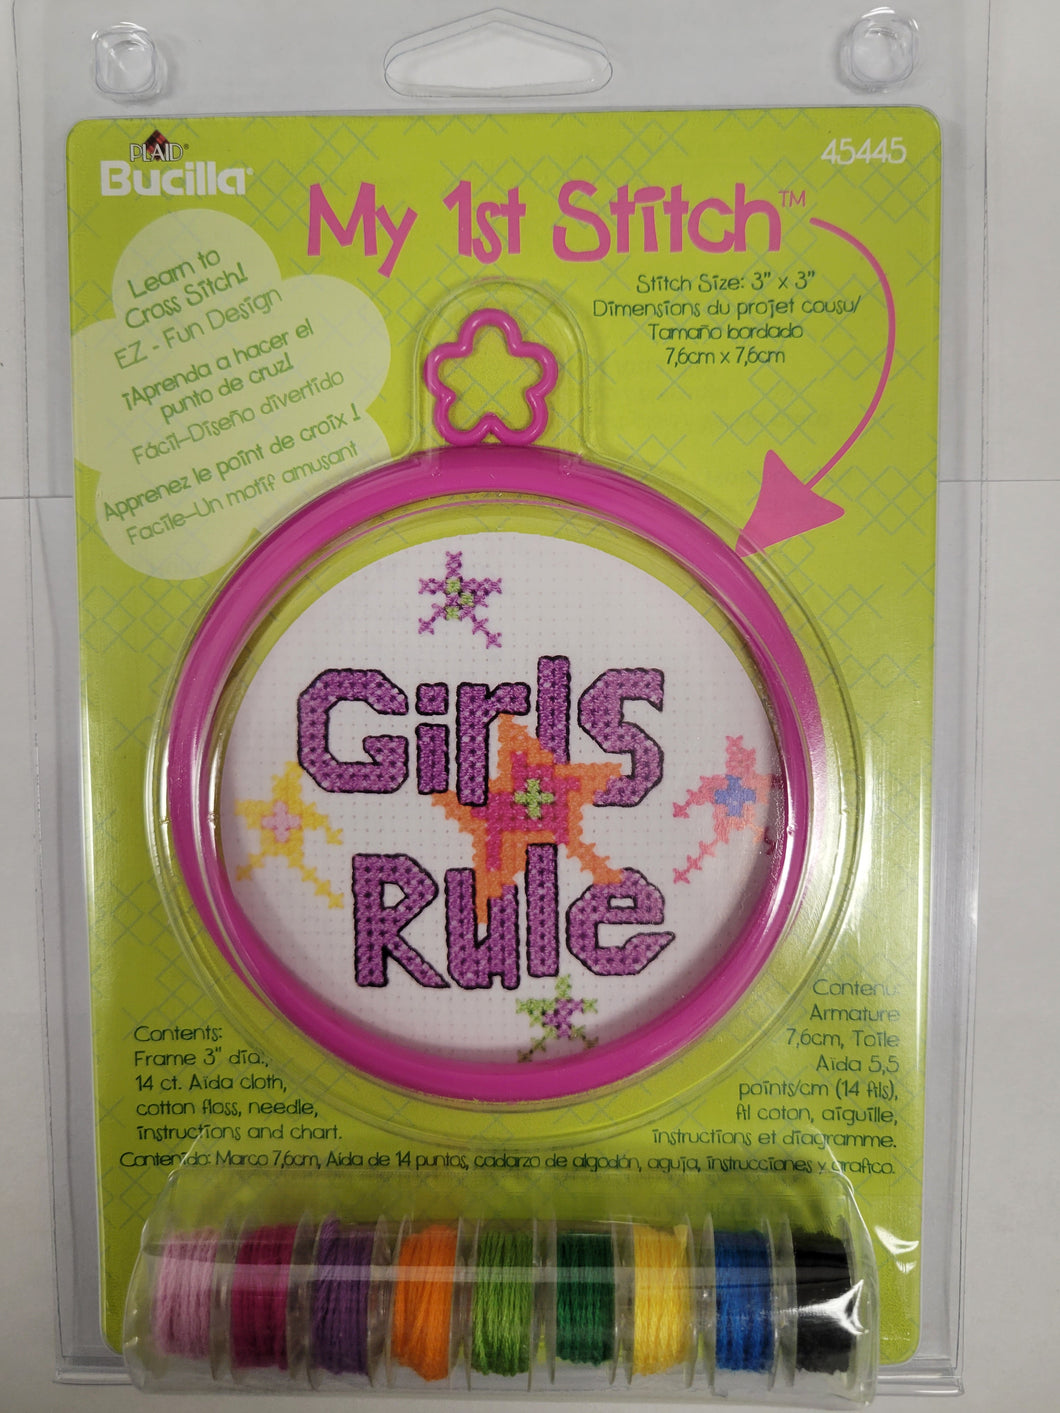 Girls rule My 1st Stitch-Counted cross stitch kit